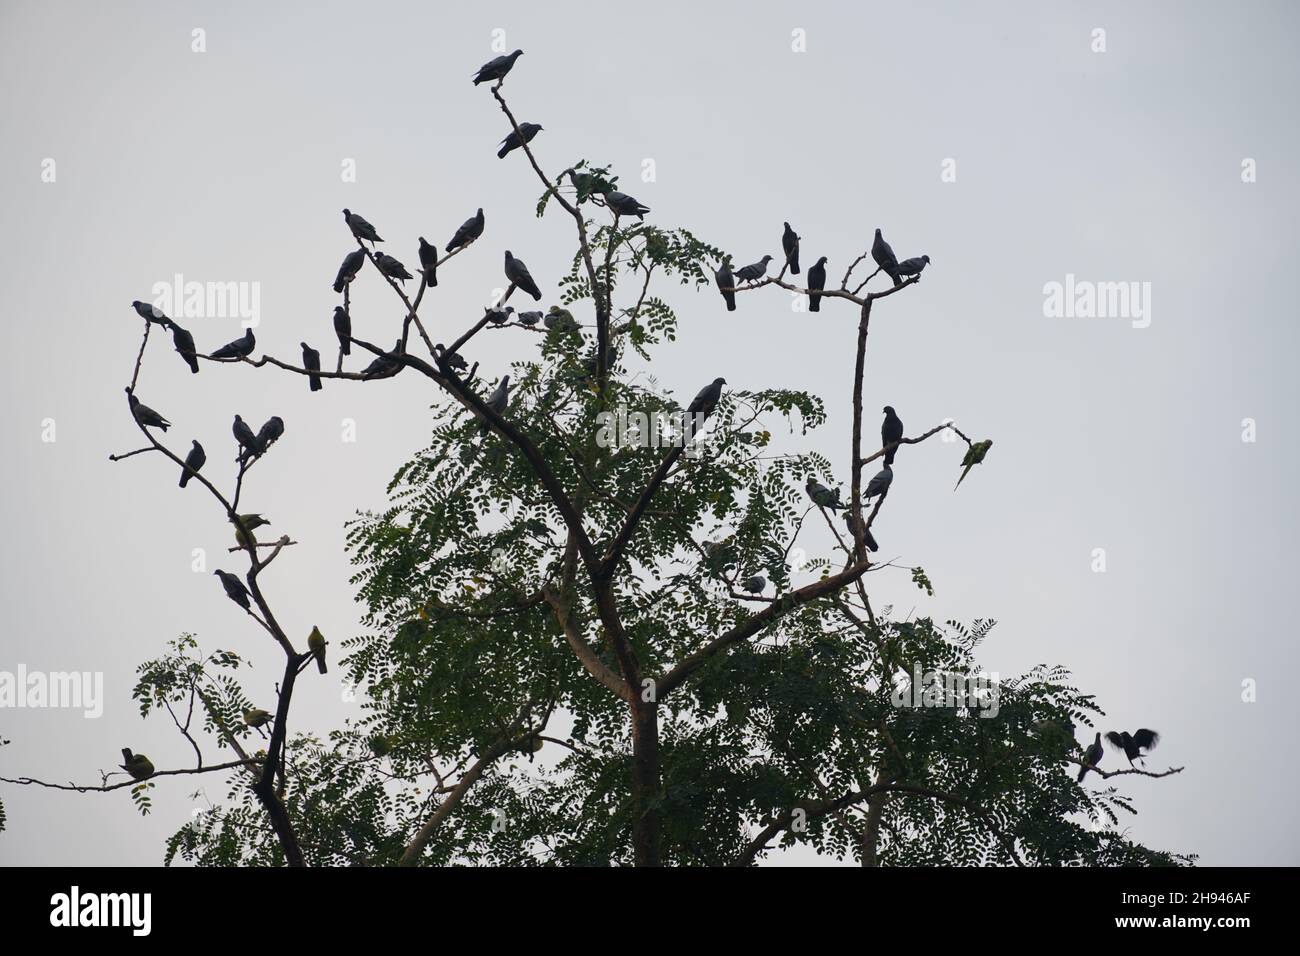 un grupo de pájaros silueta en el árbol Foto de stock